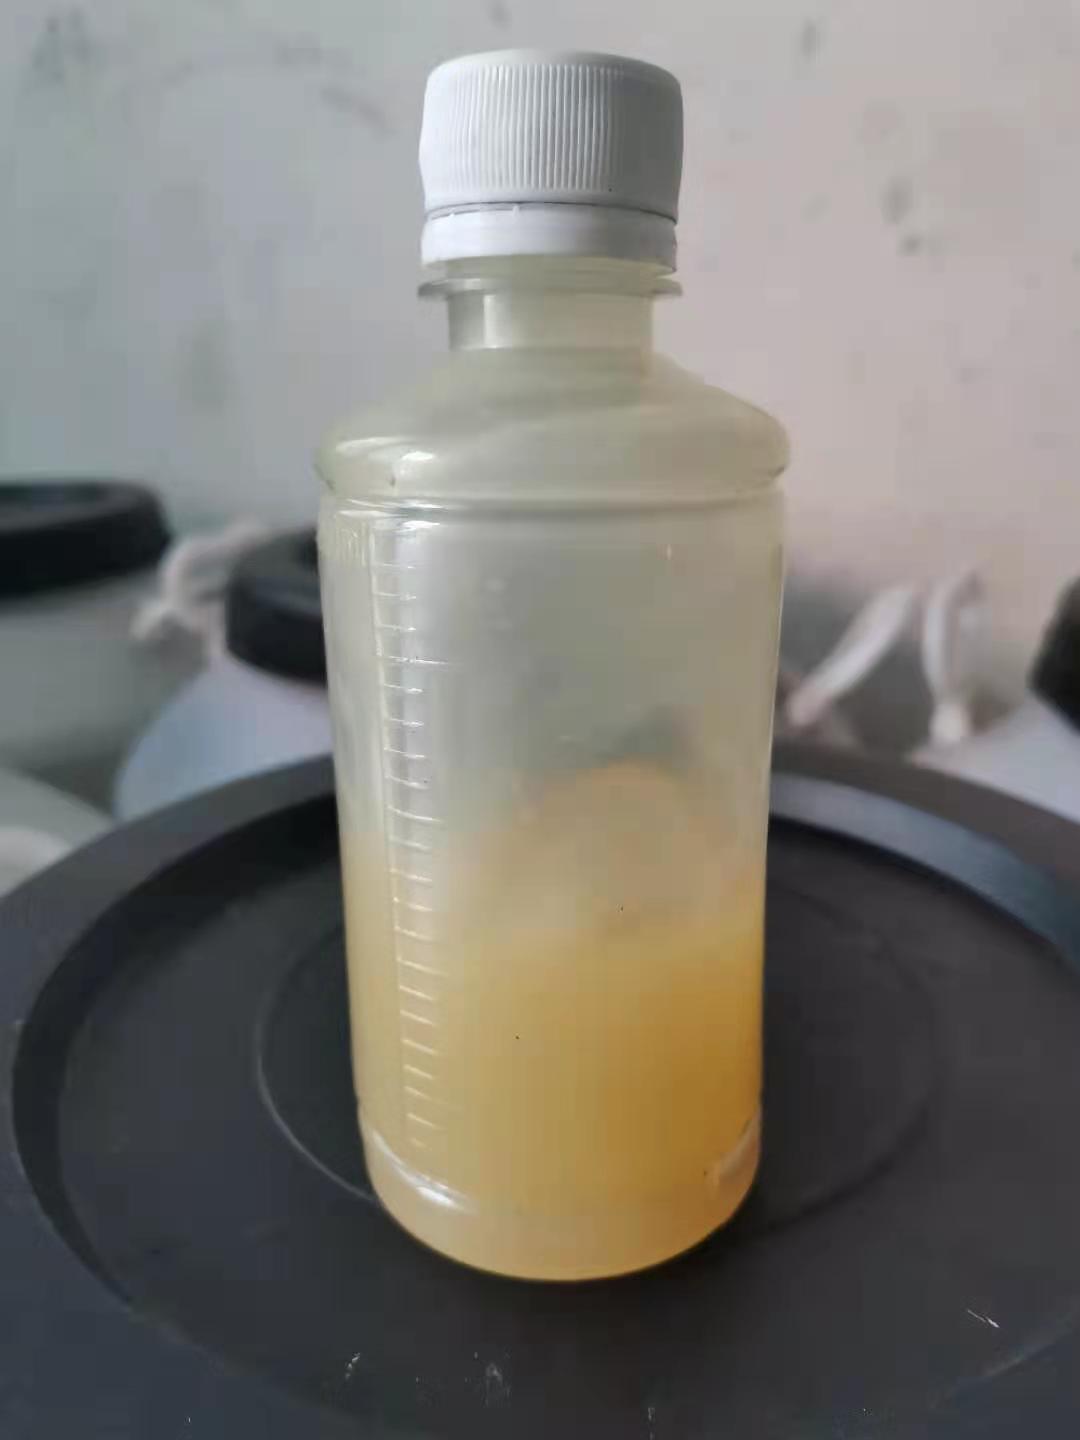 龙泰化工非硅矿物油除细泡厚浆型消泡剂